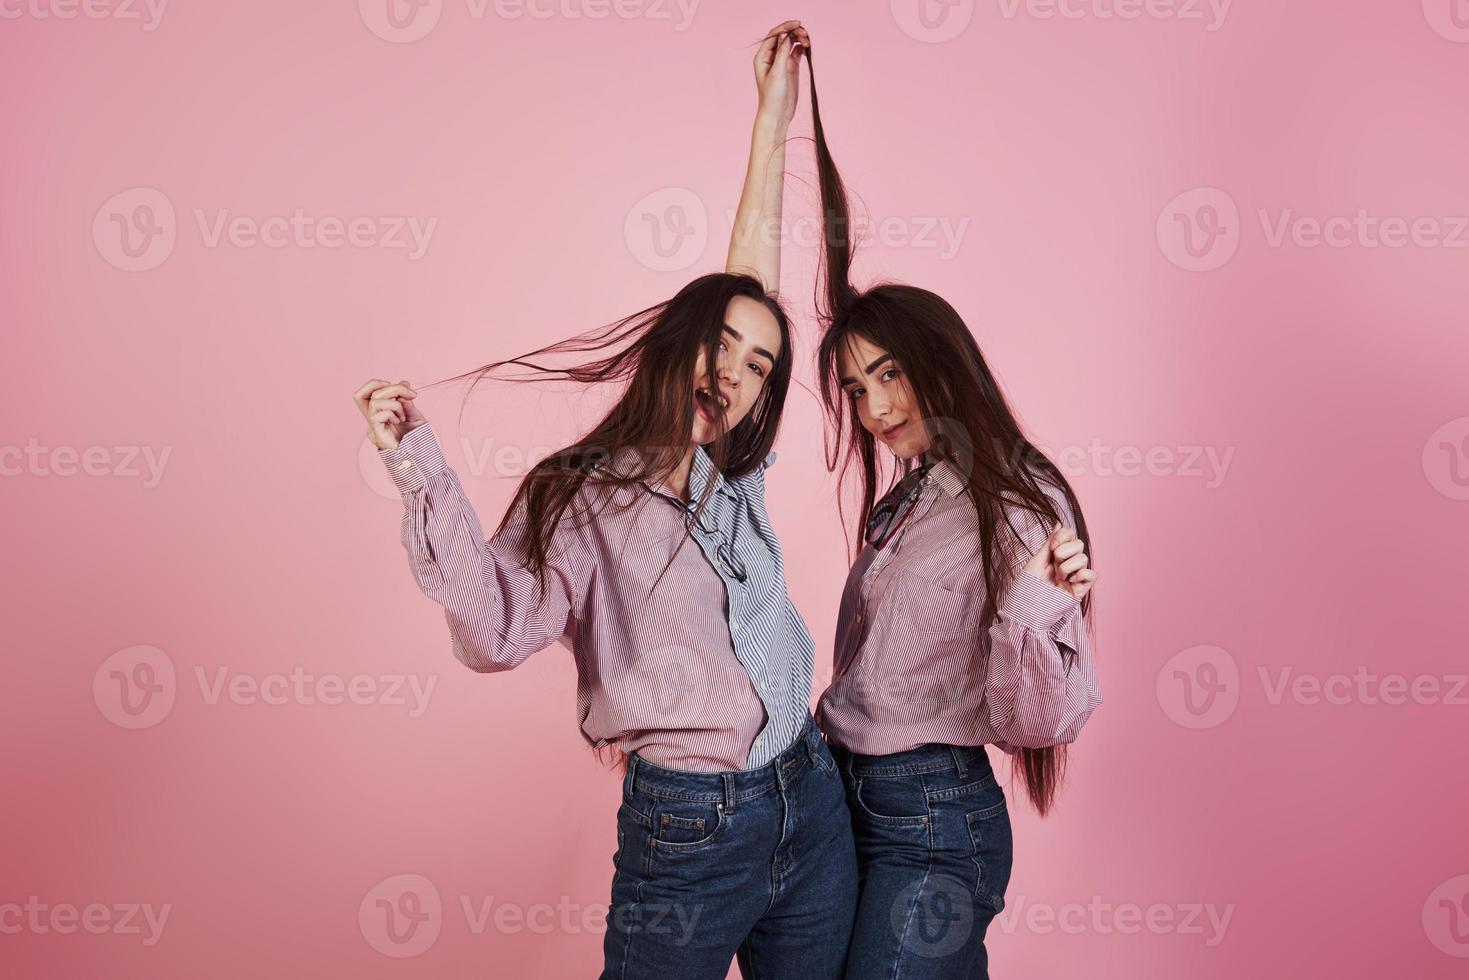 sólo movimientos juguetones al azar. mujeres jóvenes divirtiéndose en el estudio con fondo rosa. gemelos adorables foto